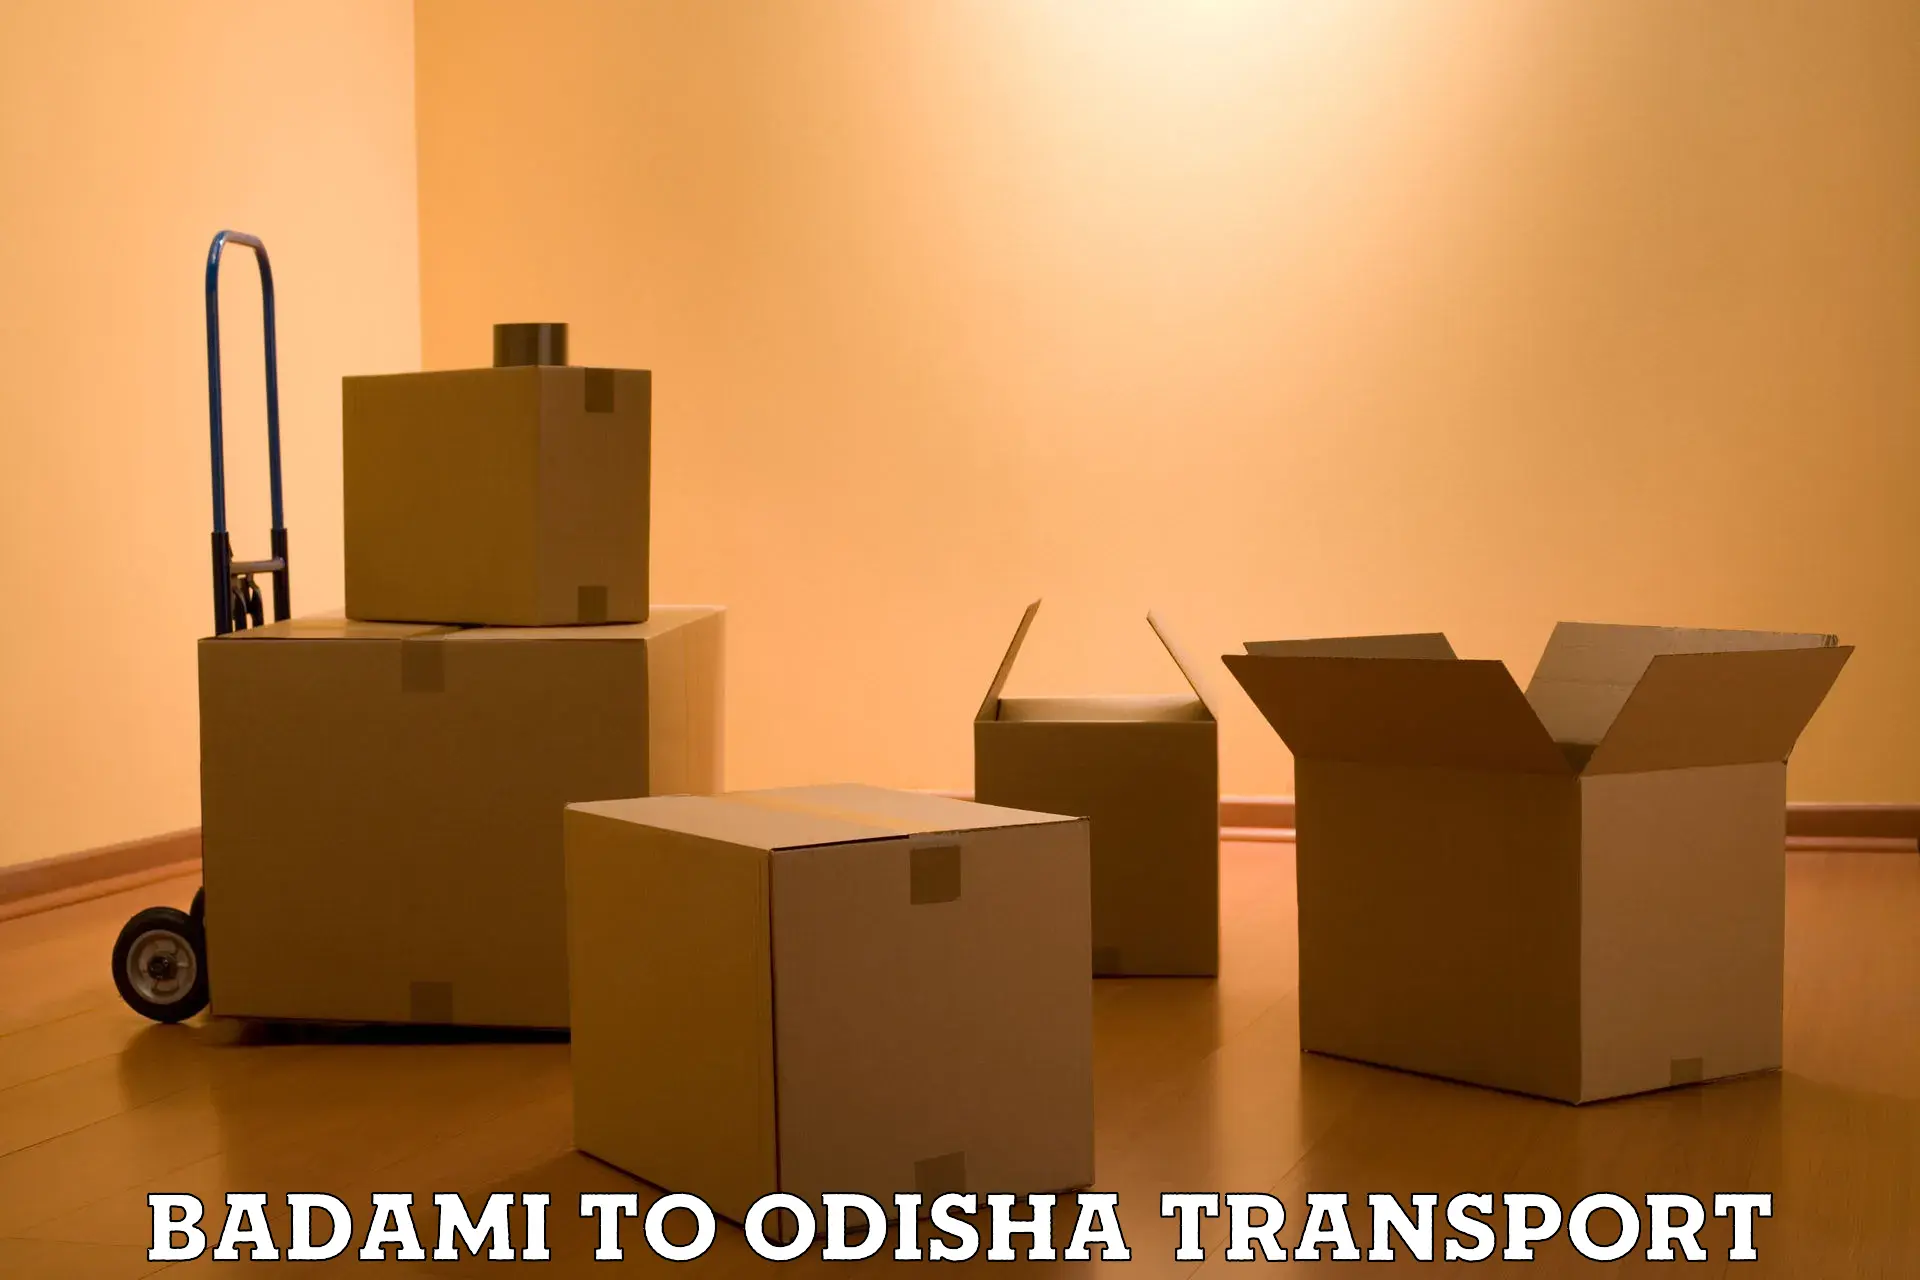 Bike shipping service Badami to Odisha